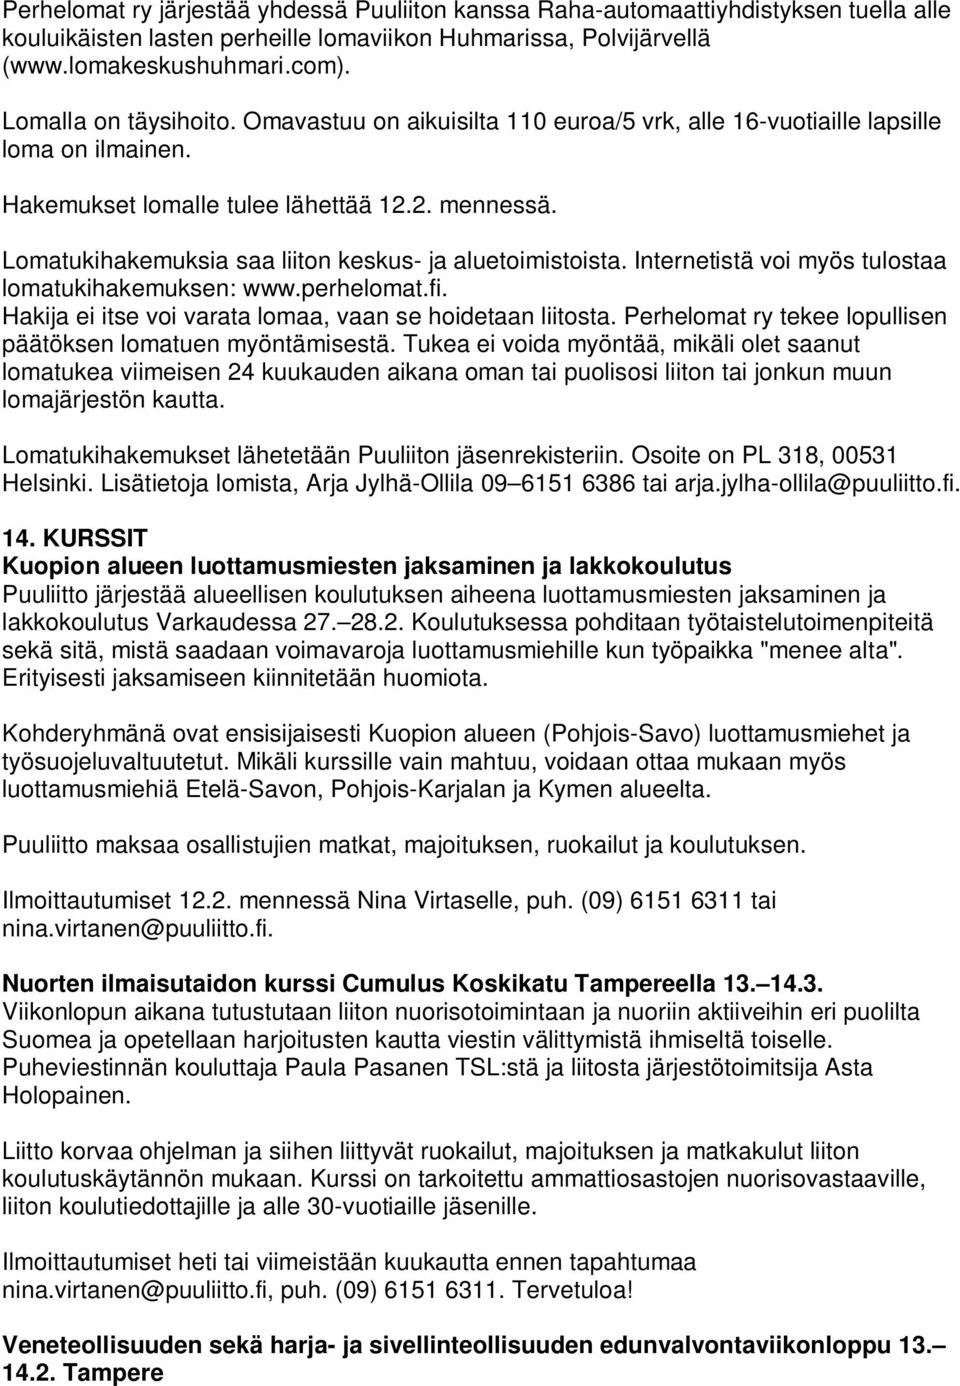 Lomatukihakemuksia saa liiton keskus- ja aluetoimistoista. Internetistä voi myös tulostaa lomatukihakemuksen: www.perhelomat.fi. Hakija ei itse voi varata lomaa, vaan se hoidetaan liitosta.